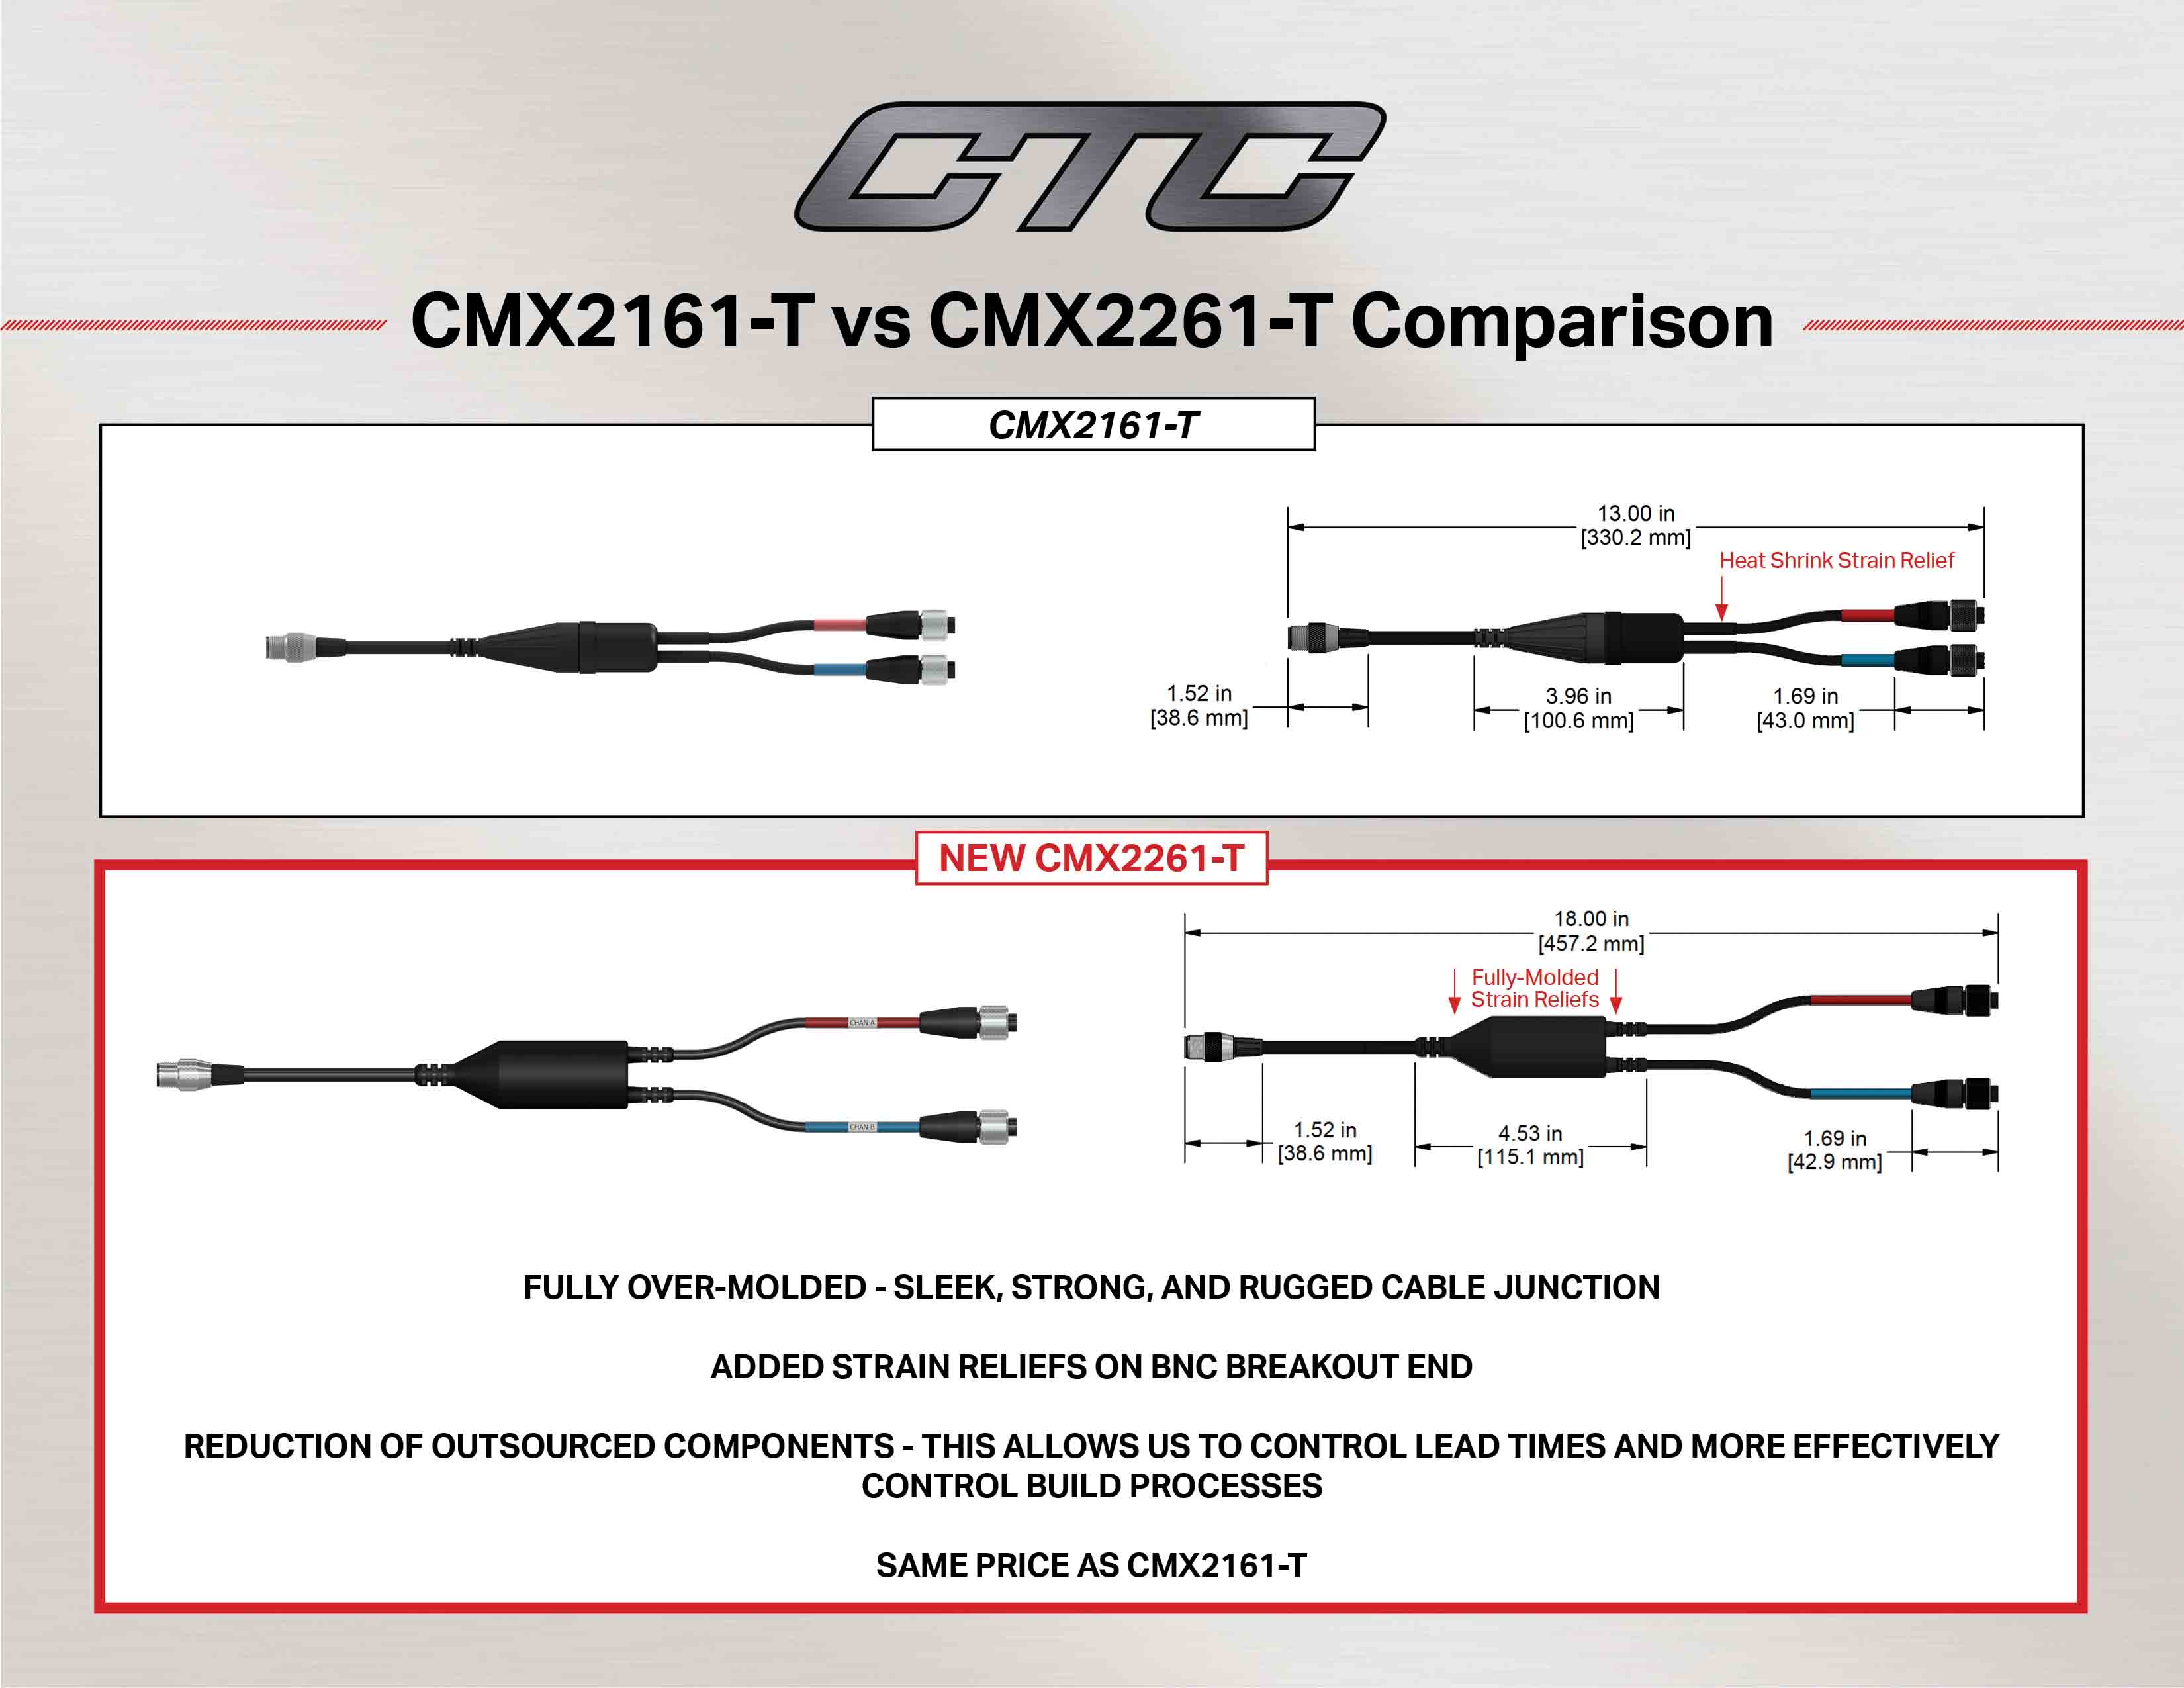 CMX2161-T vs CMX2261-T cable comparison diagram and measurements